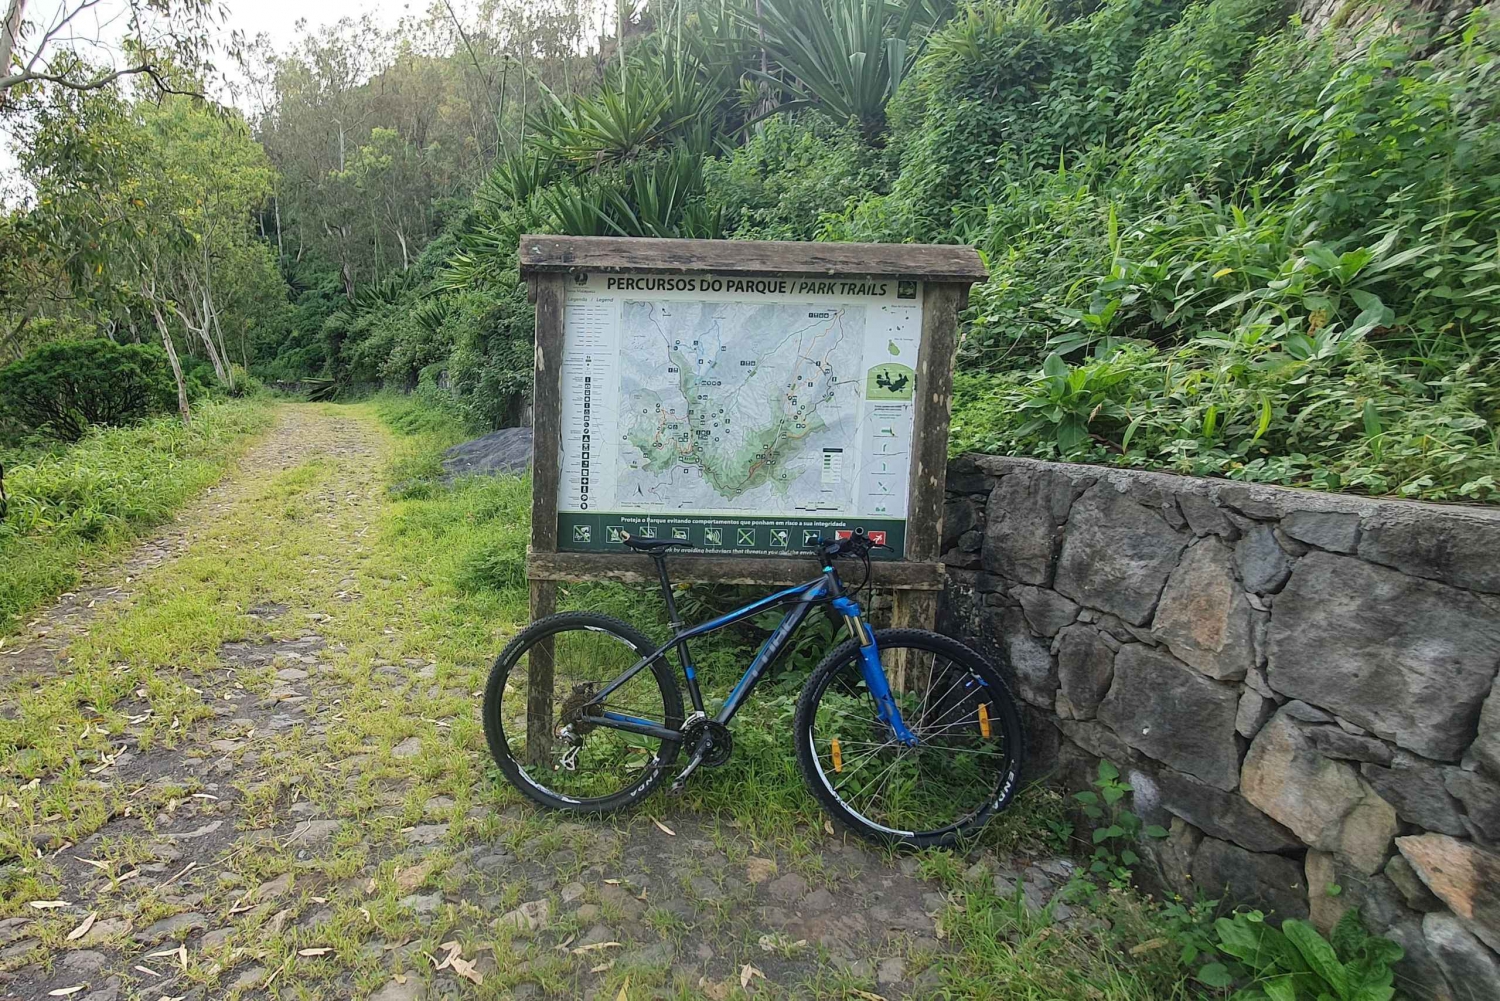 Serra Malagueta: Sykkeleventyr i naturparken